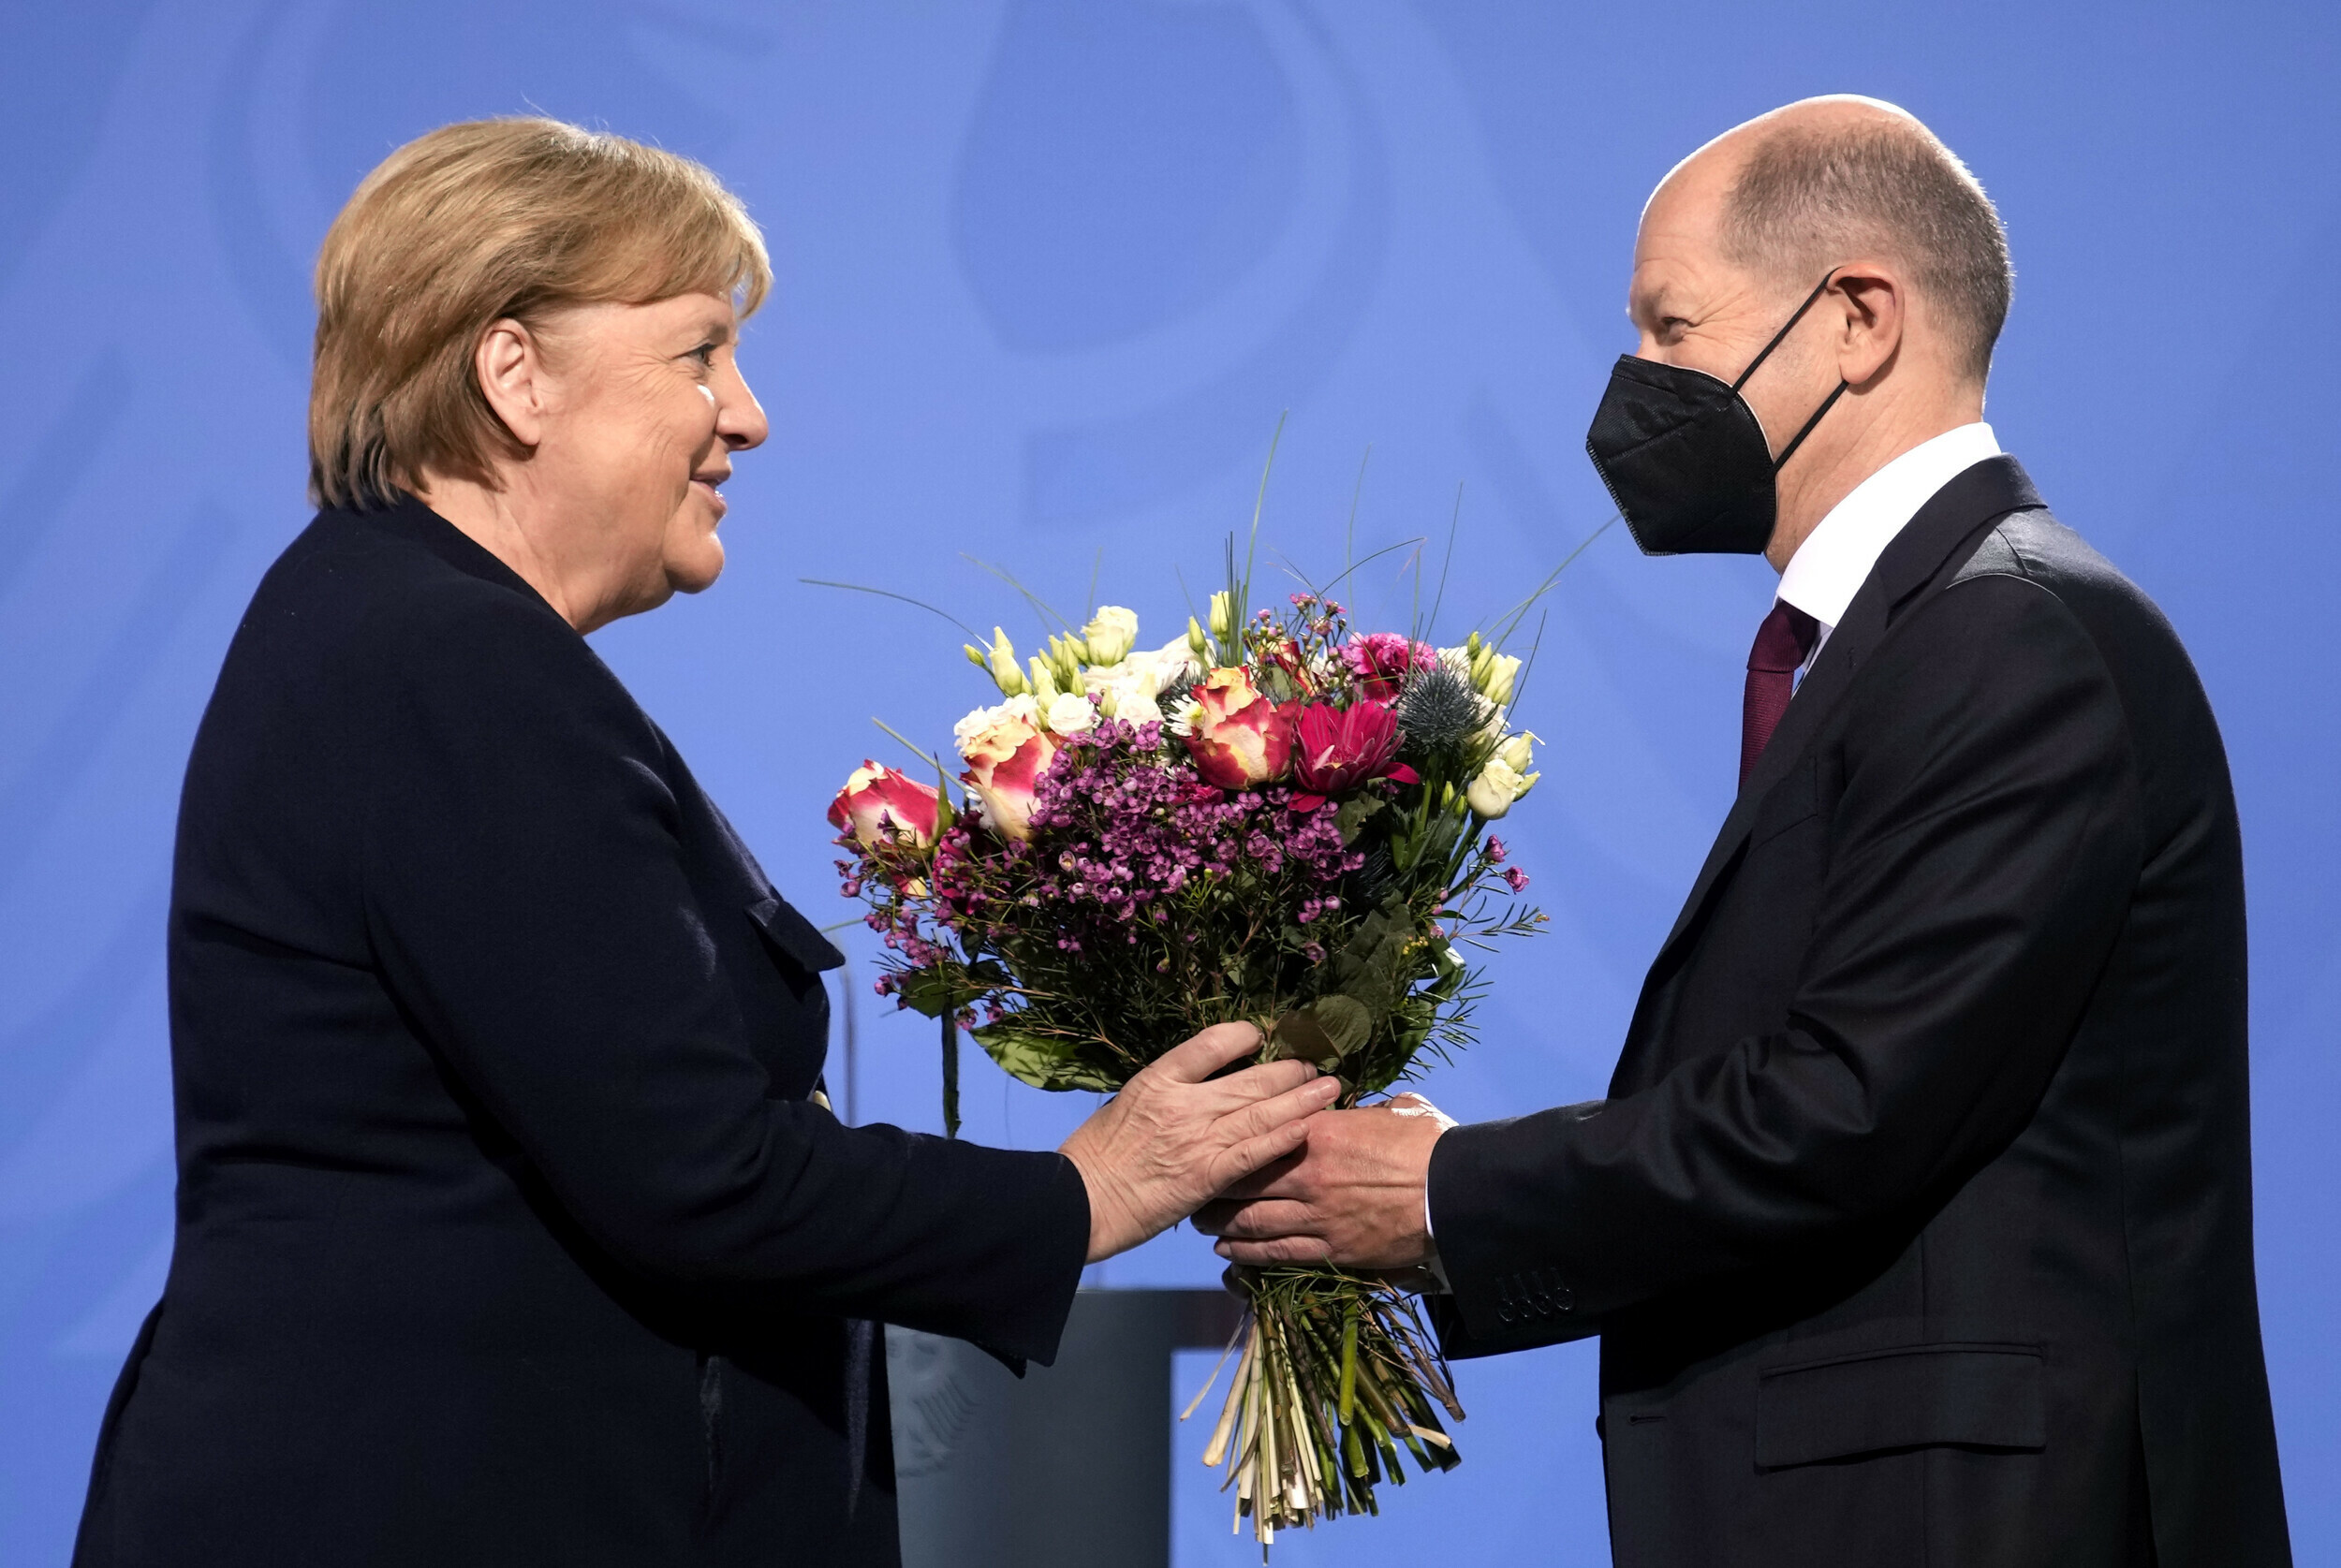 Τέλος εποχής στη Γερμανία: Η Μέρκελ παρέδωσε τα κλειδιά της Καγκελαρίας στον Σολτς